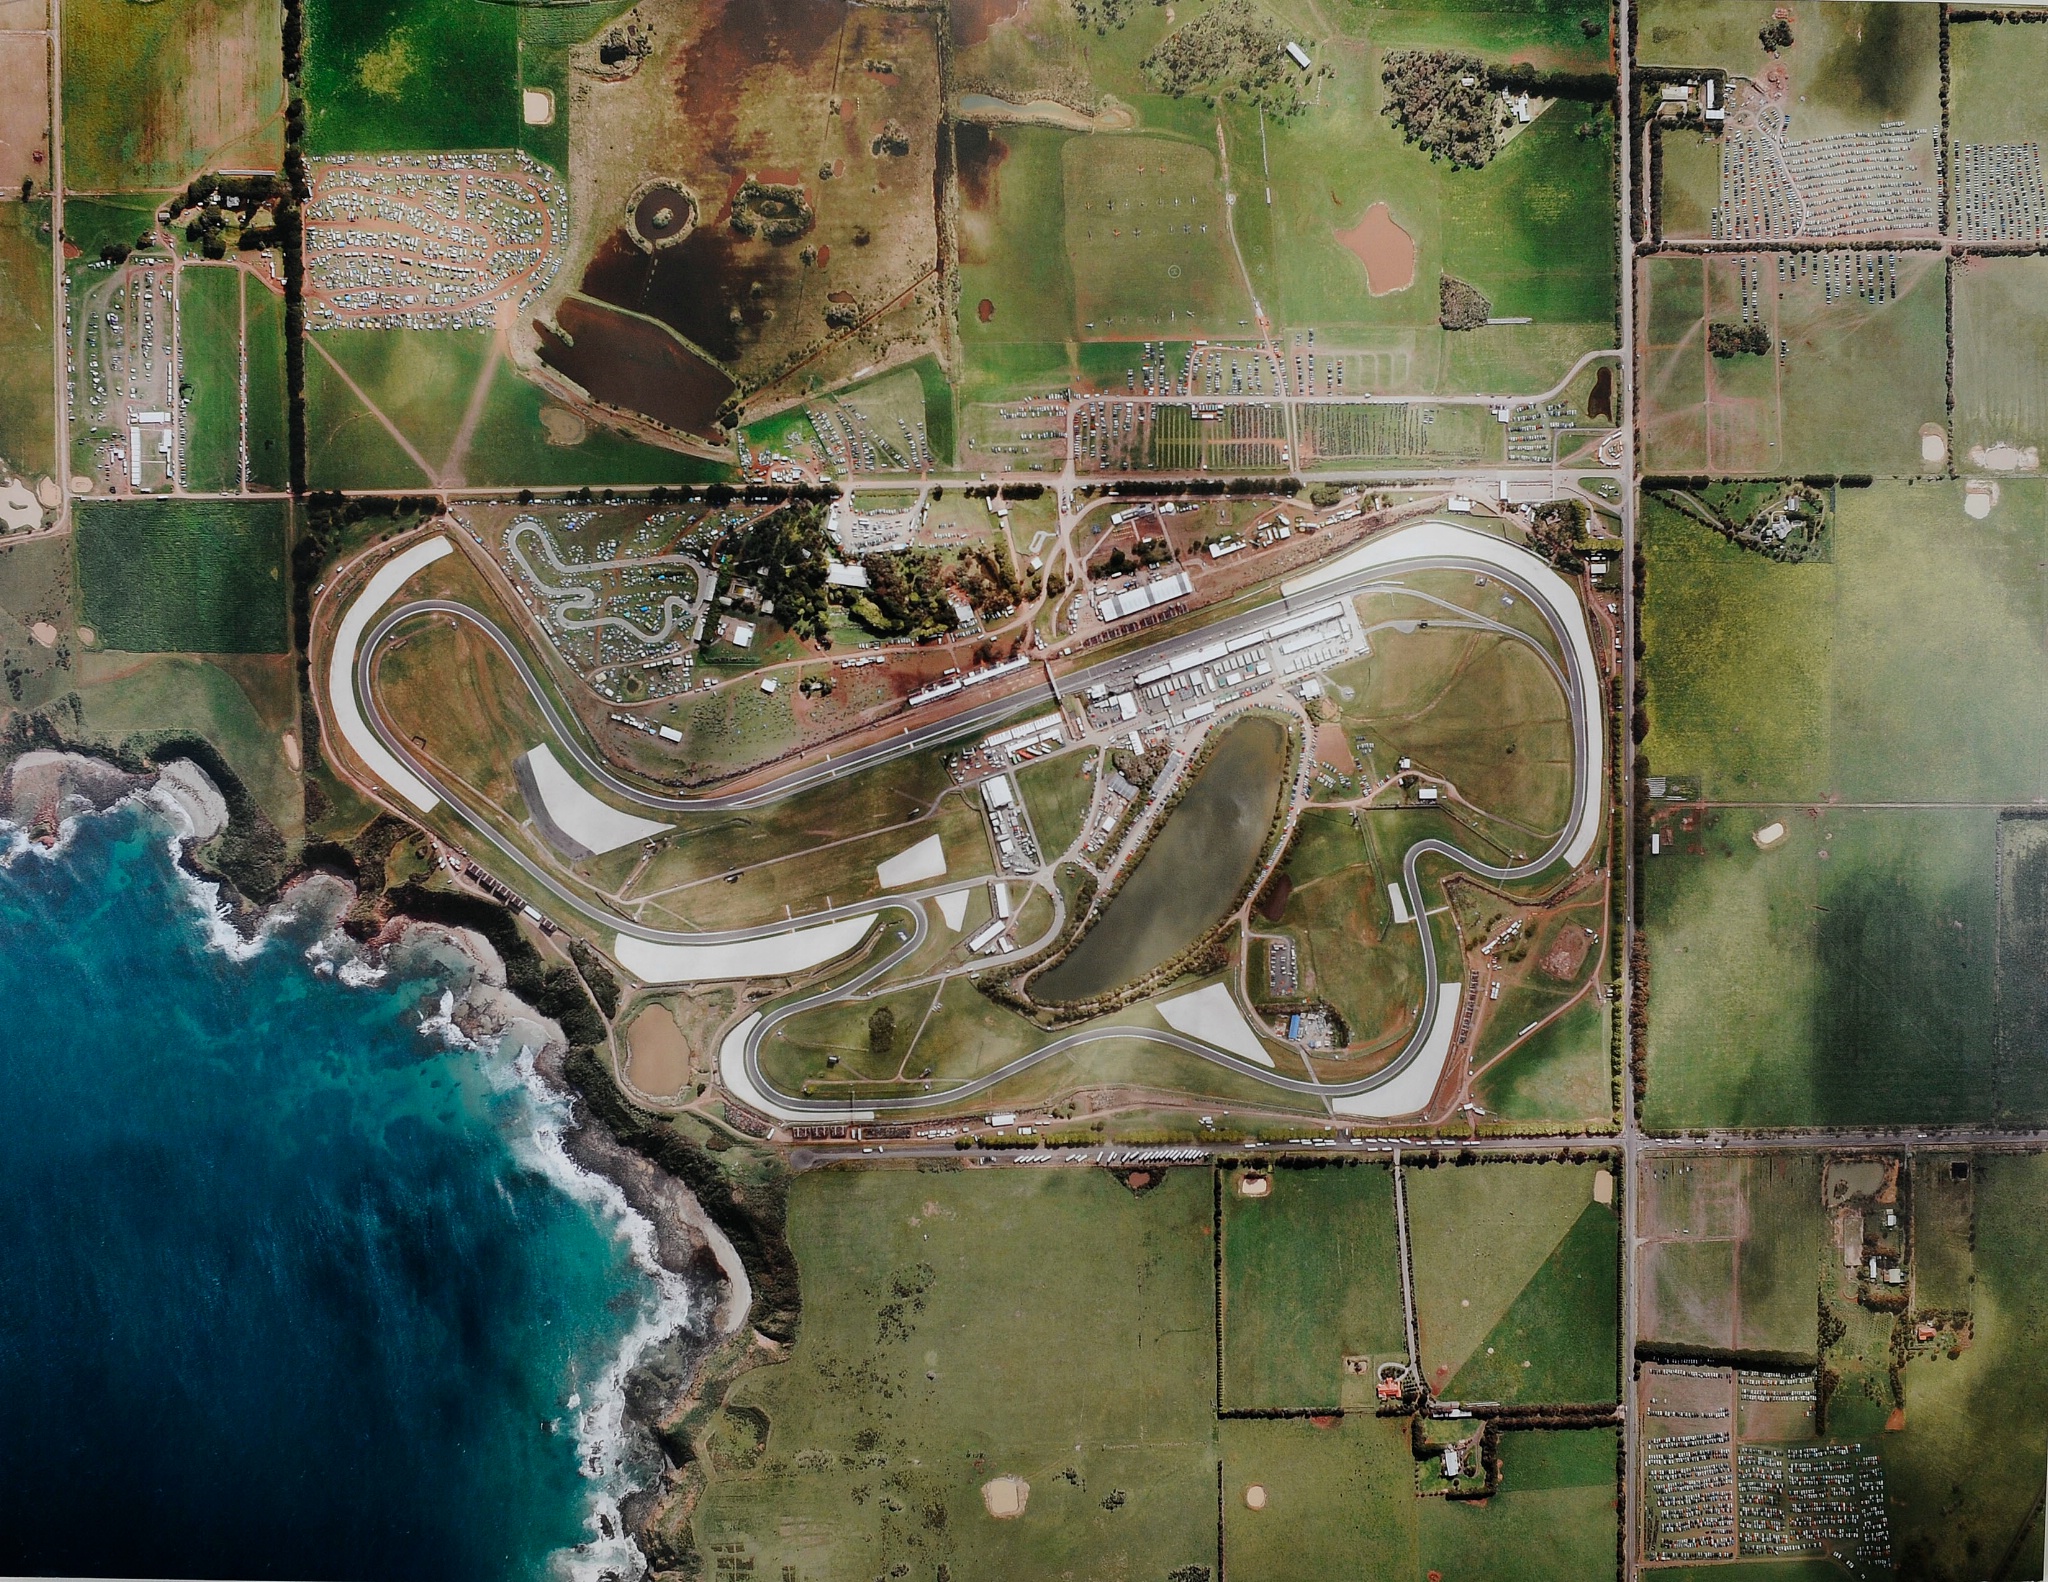 Phillip Island aerial view, Australian MotoGP